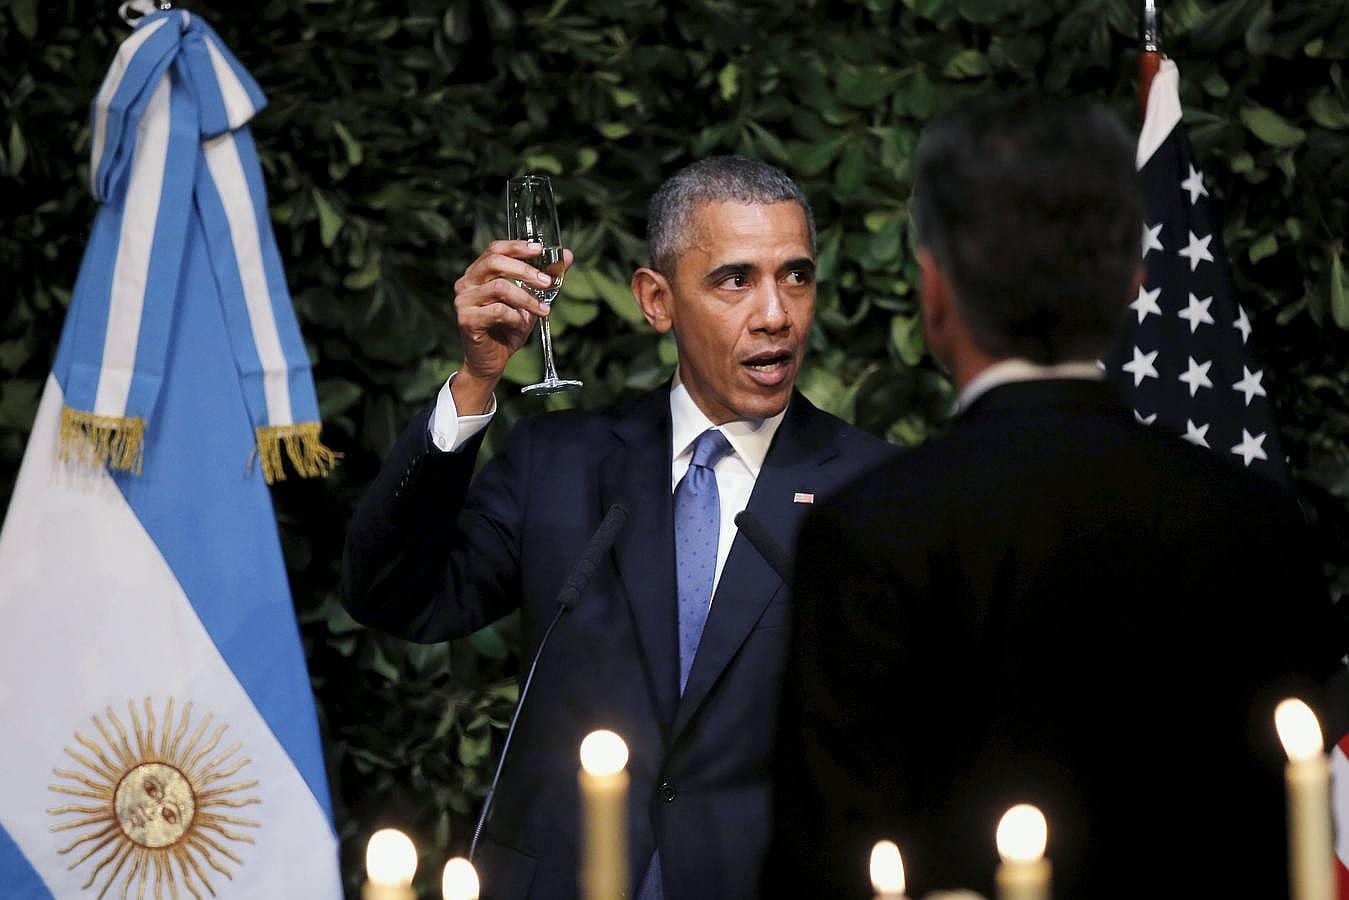 Obama levanta su copa para brindar tras su discurso